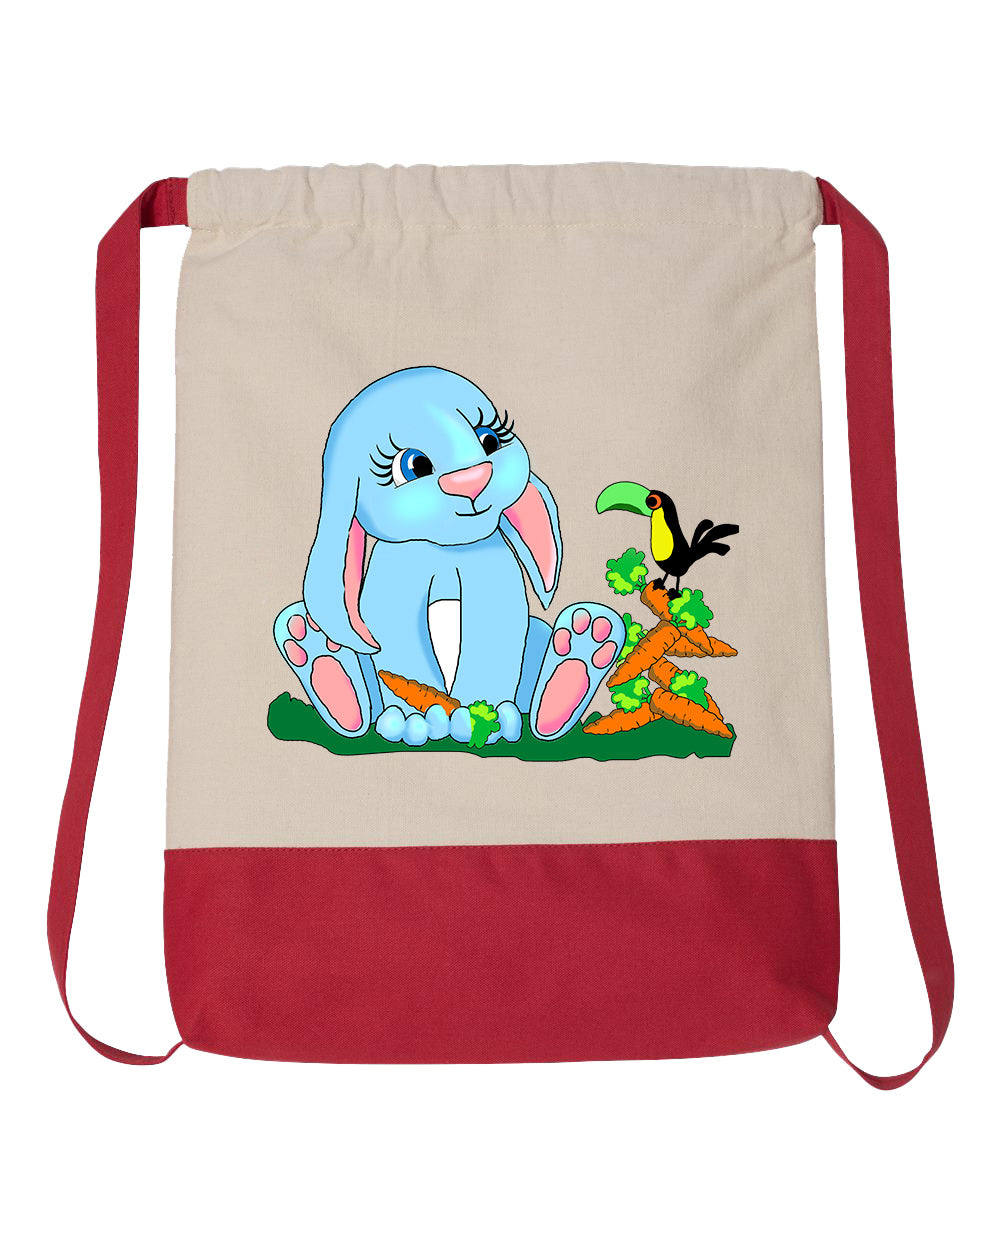 Bunny Drawstring Backpack